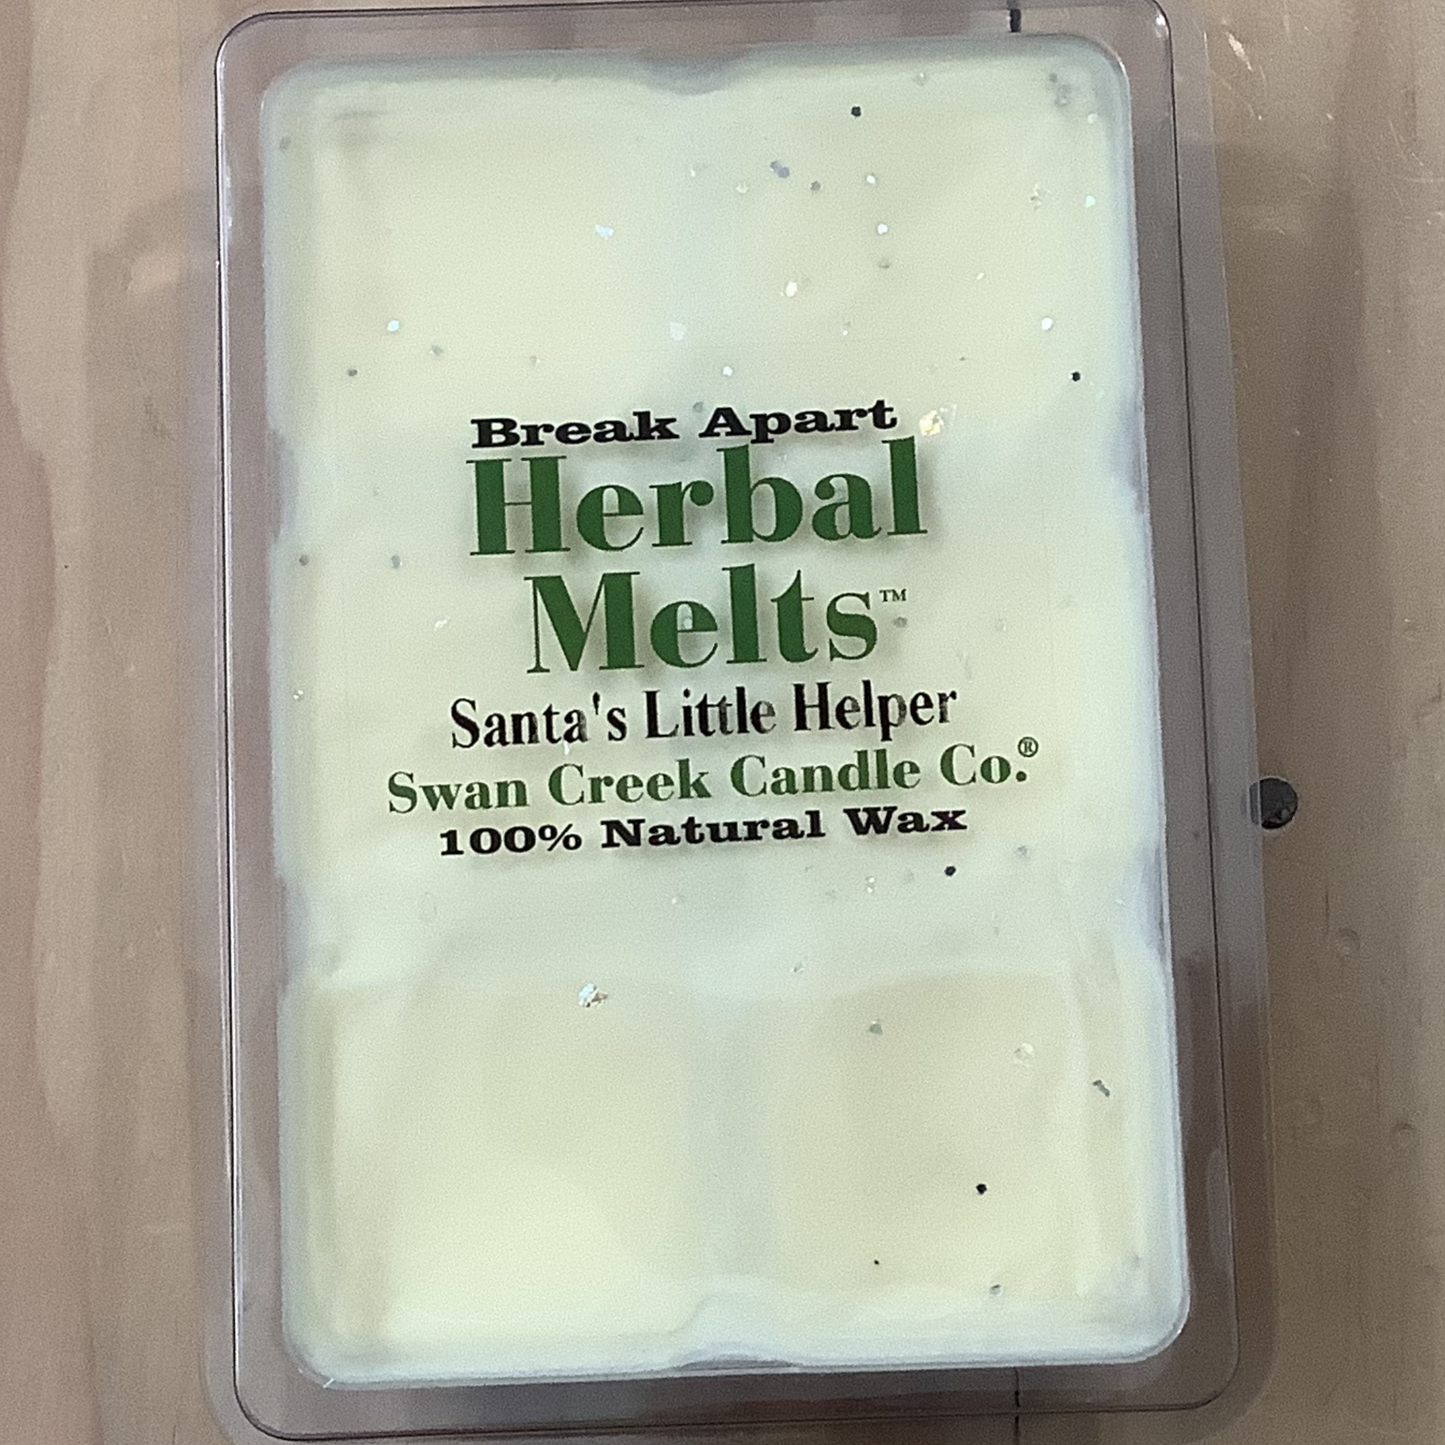 Santa's Little Helper Herbal Melts